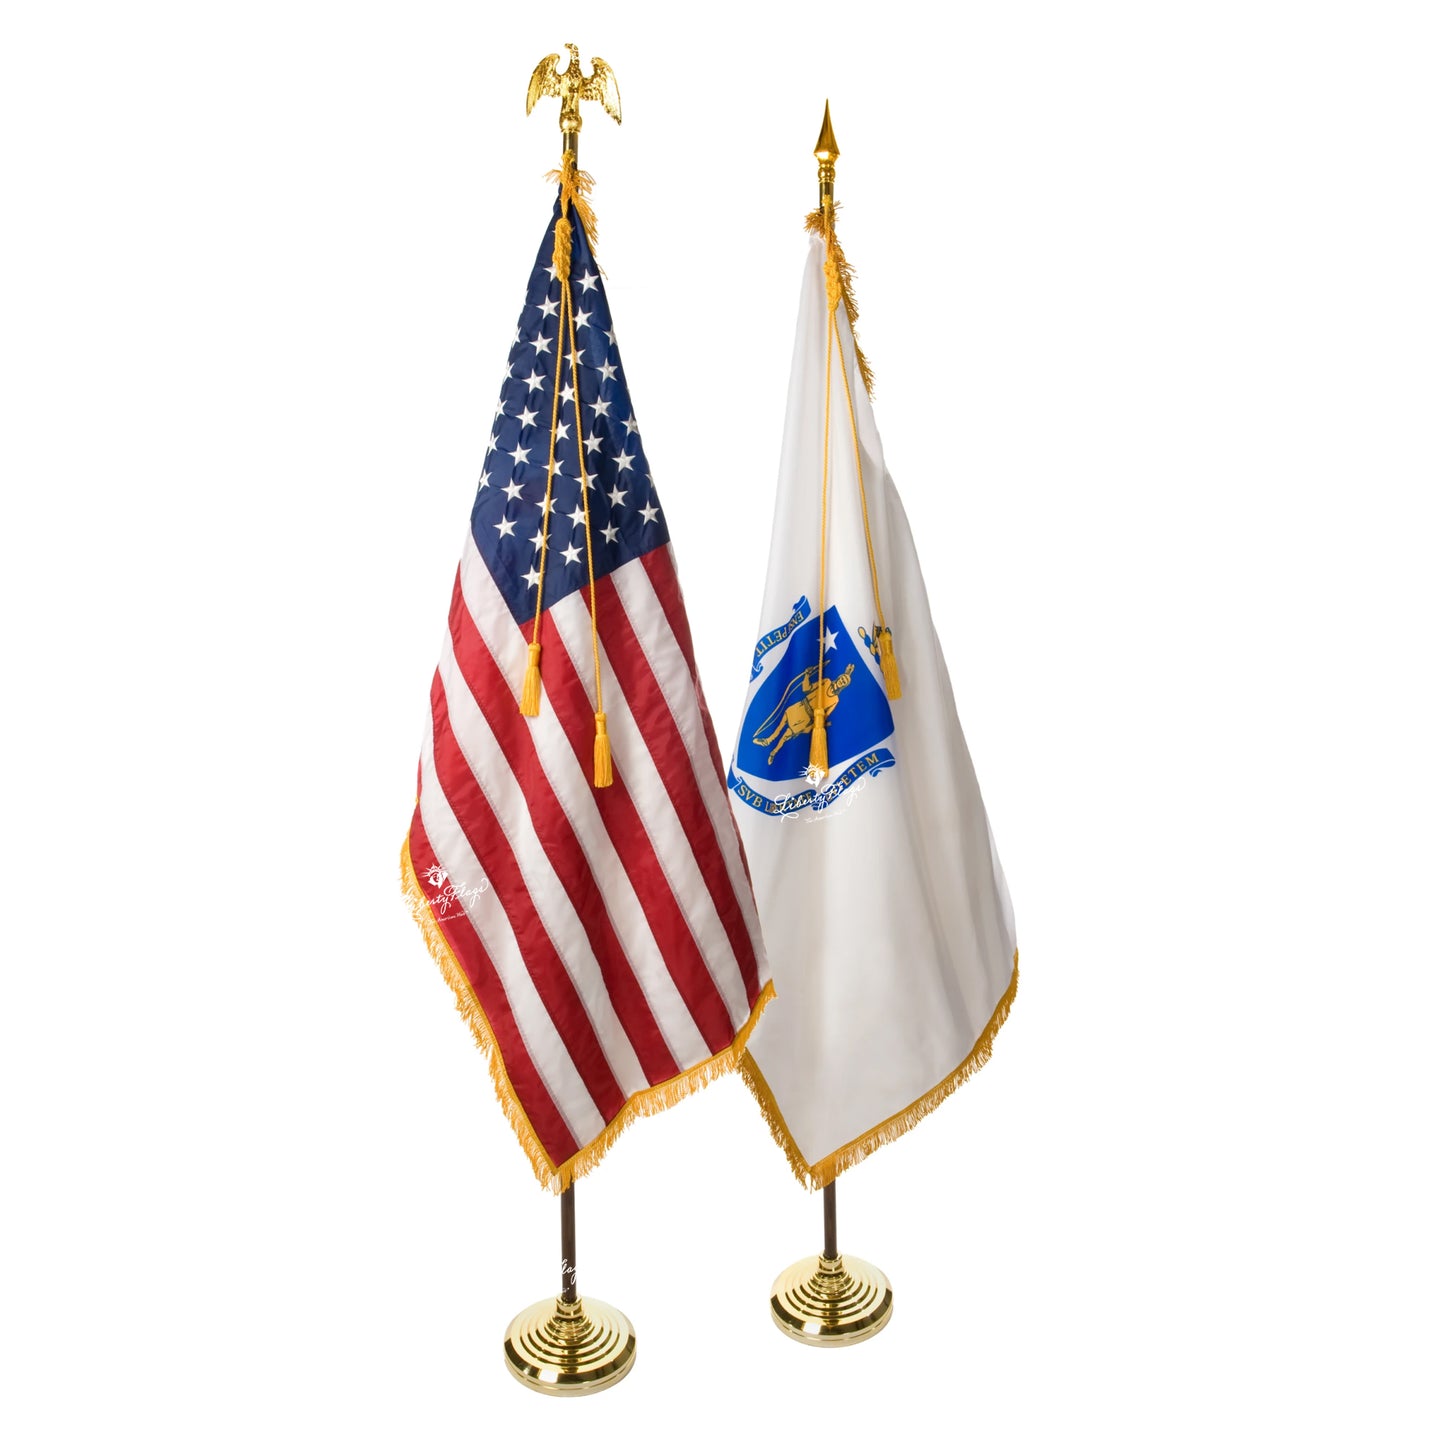 Massachusetts and U.S. Ceremonial Pairs